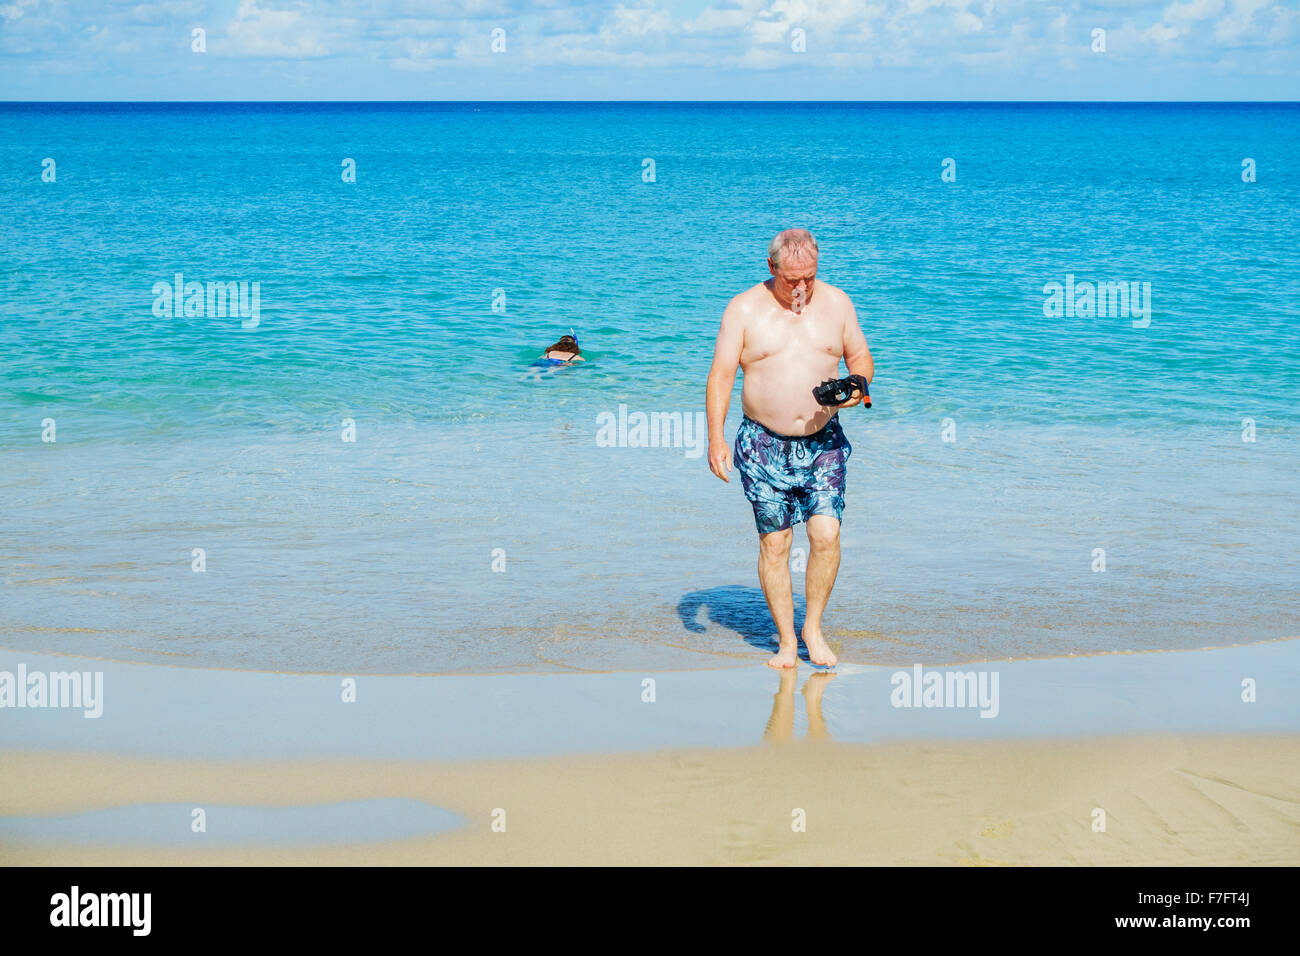 Un homme de 50 ans inspecte son masque et tuba comme il sort de la mer des Caraïbes à la plage, à Sainte-Croix, les Îles Vierges des États-Unis. USVI, U.S.V.I. Banque D'Images